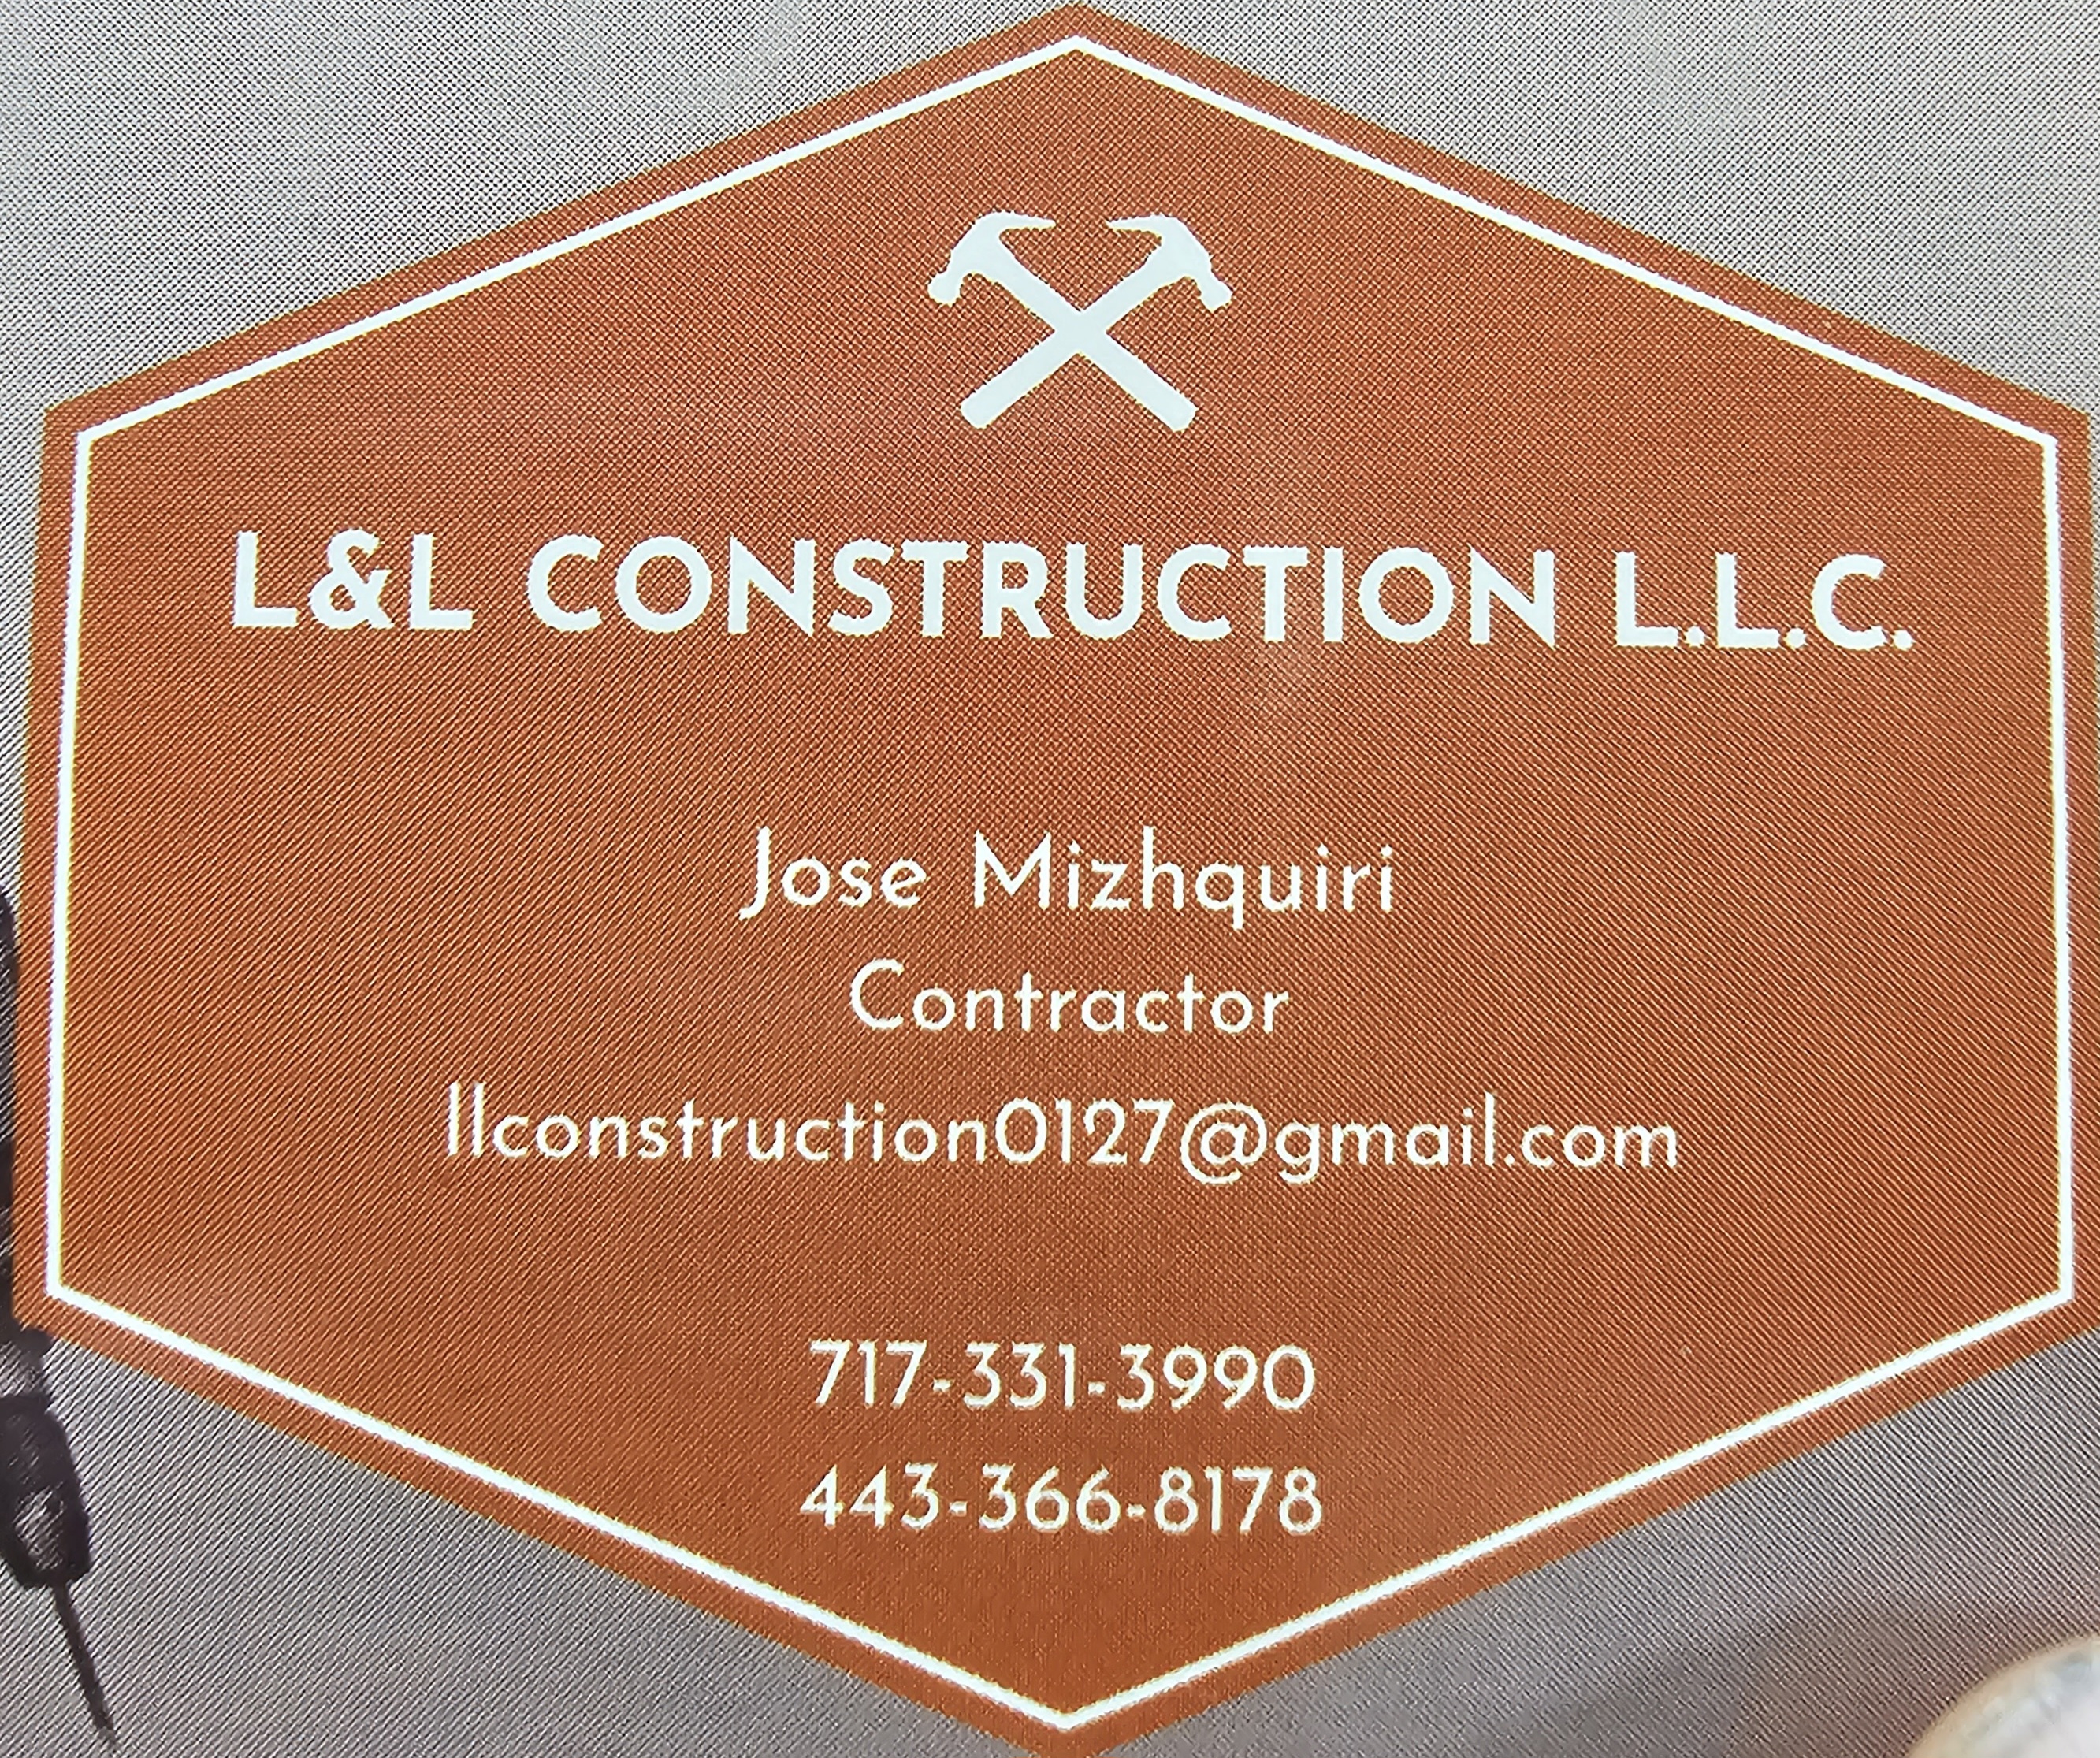 L&L Construction Logo